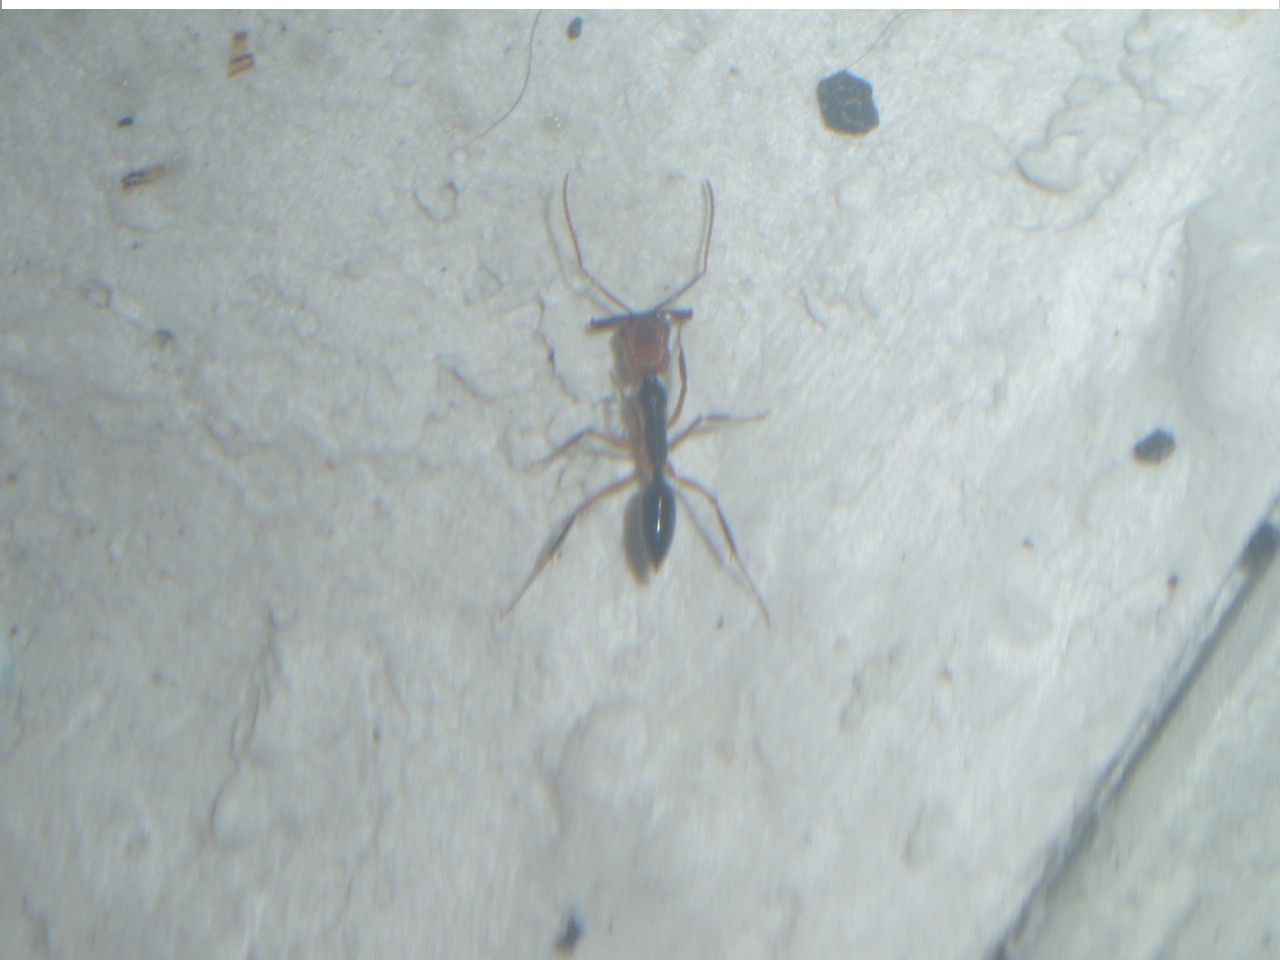 Odontomachus E.